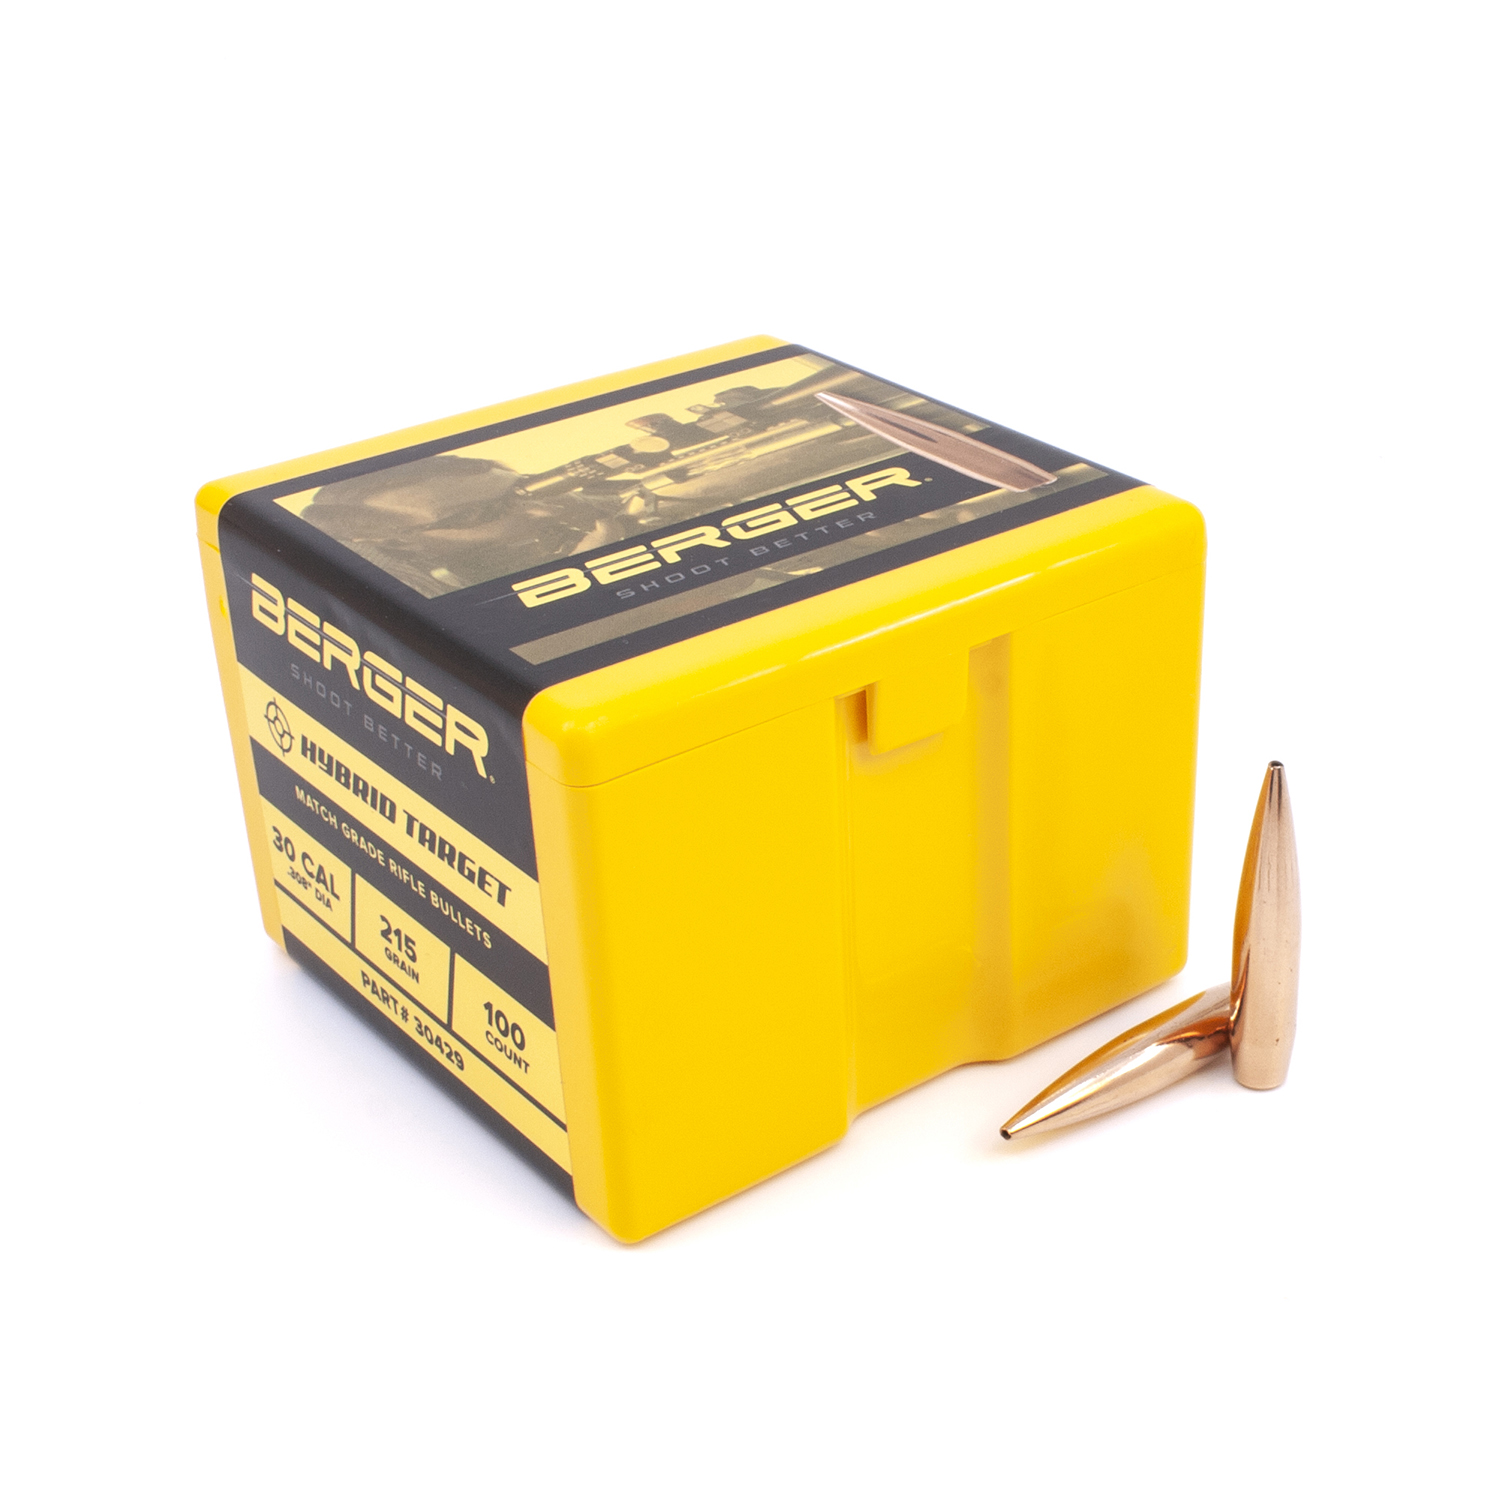 Berger Bullets - .30 cal, 215 gr. Hybrid Target - Box of 100